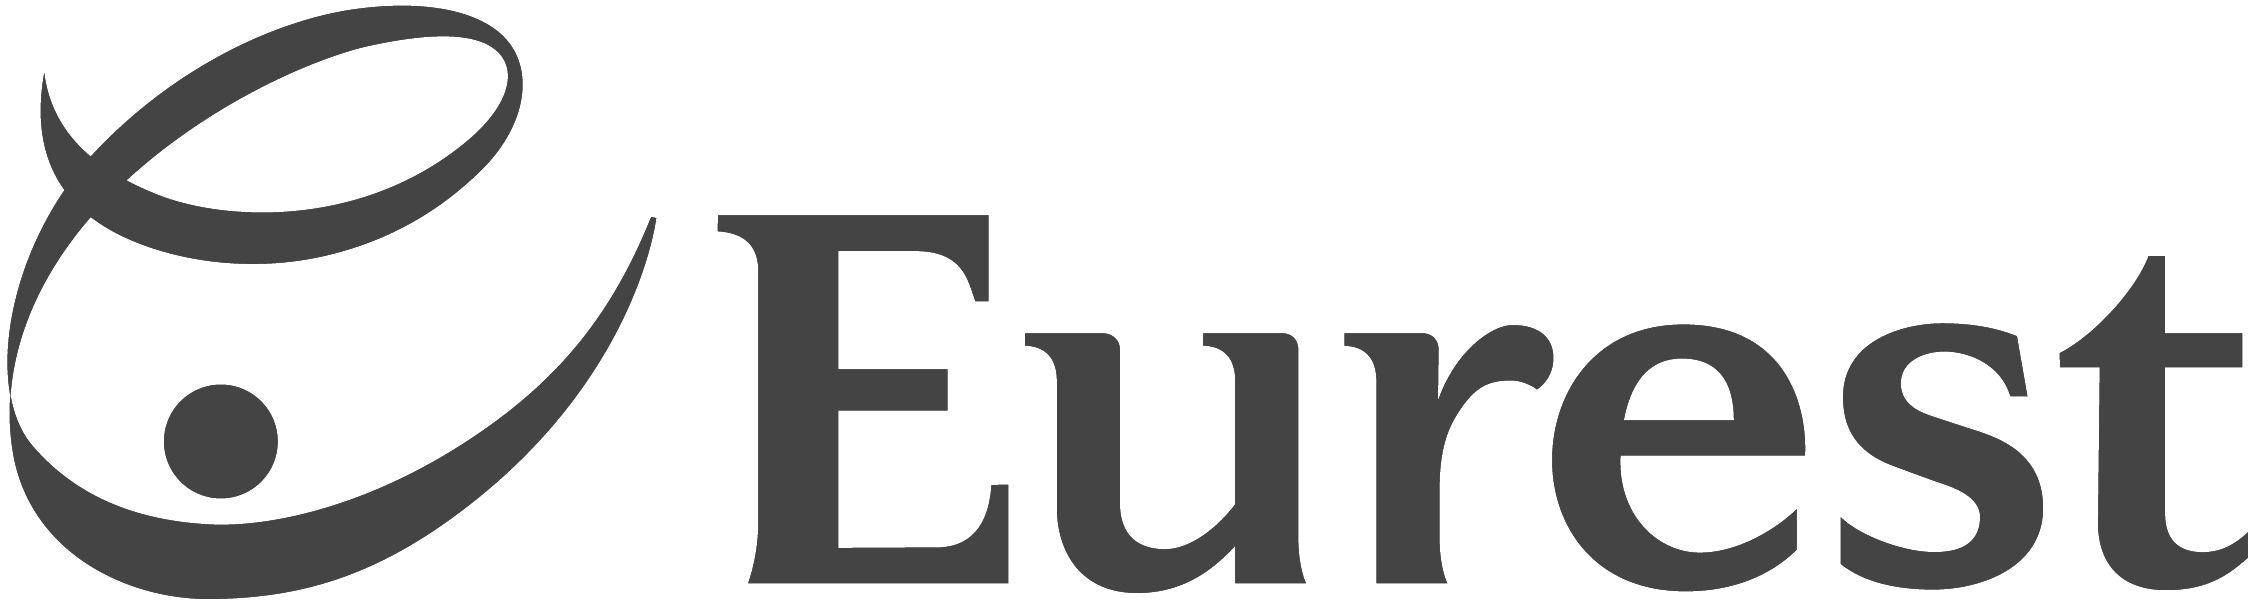 Eurest Logo - Eurest Dining